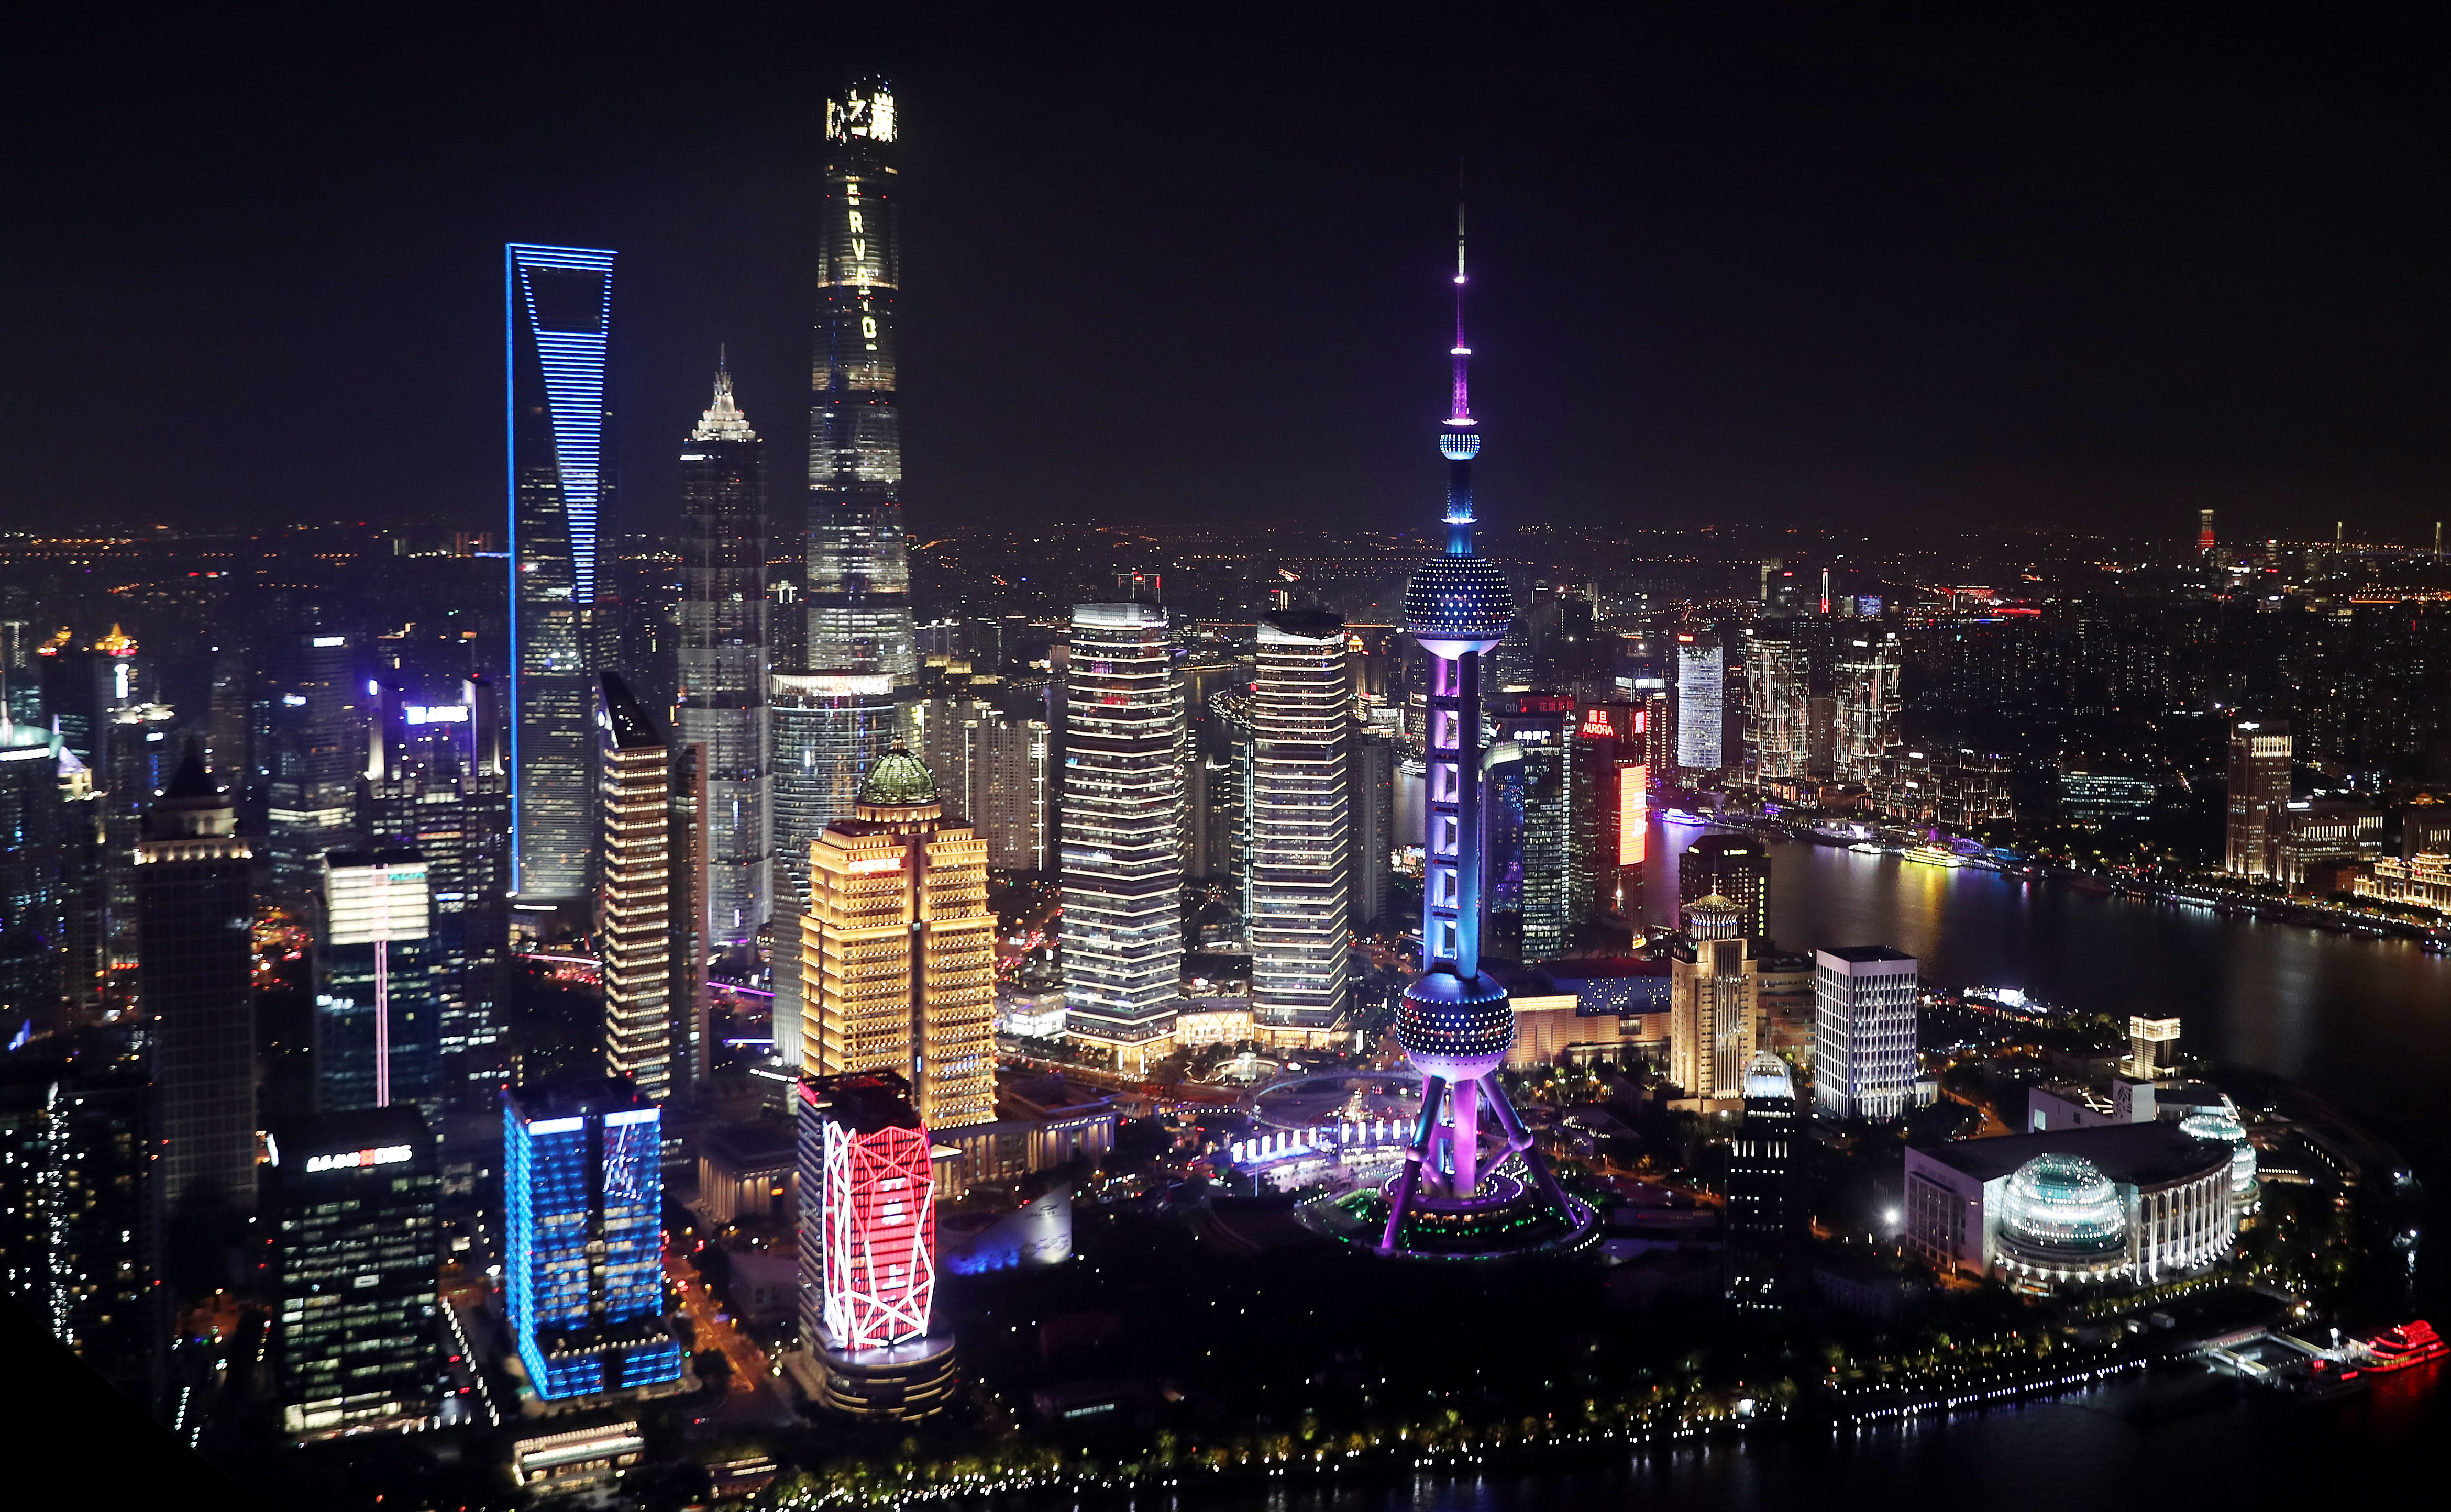 上海夜景进口博览会图片